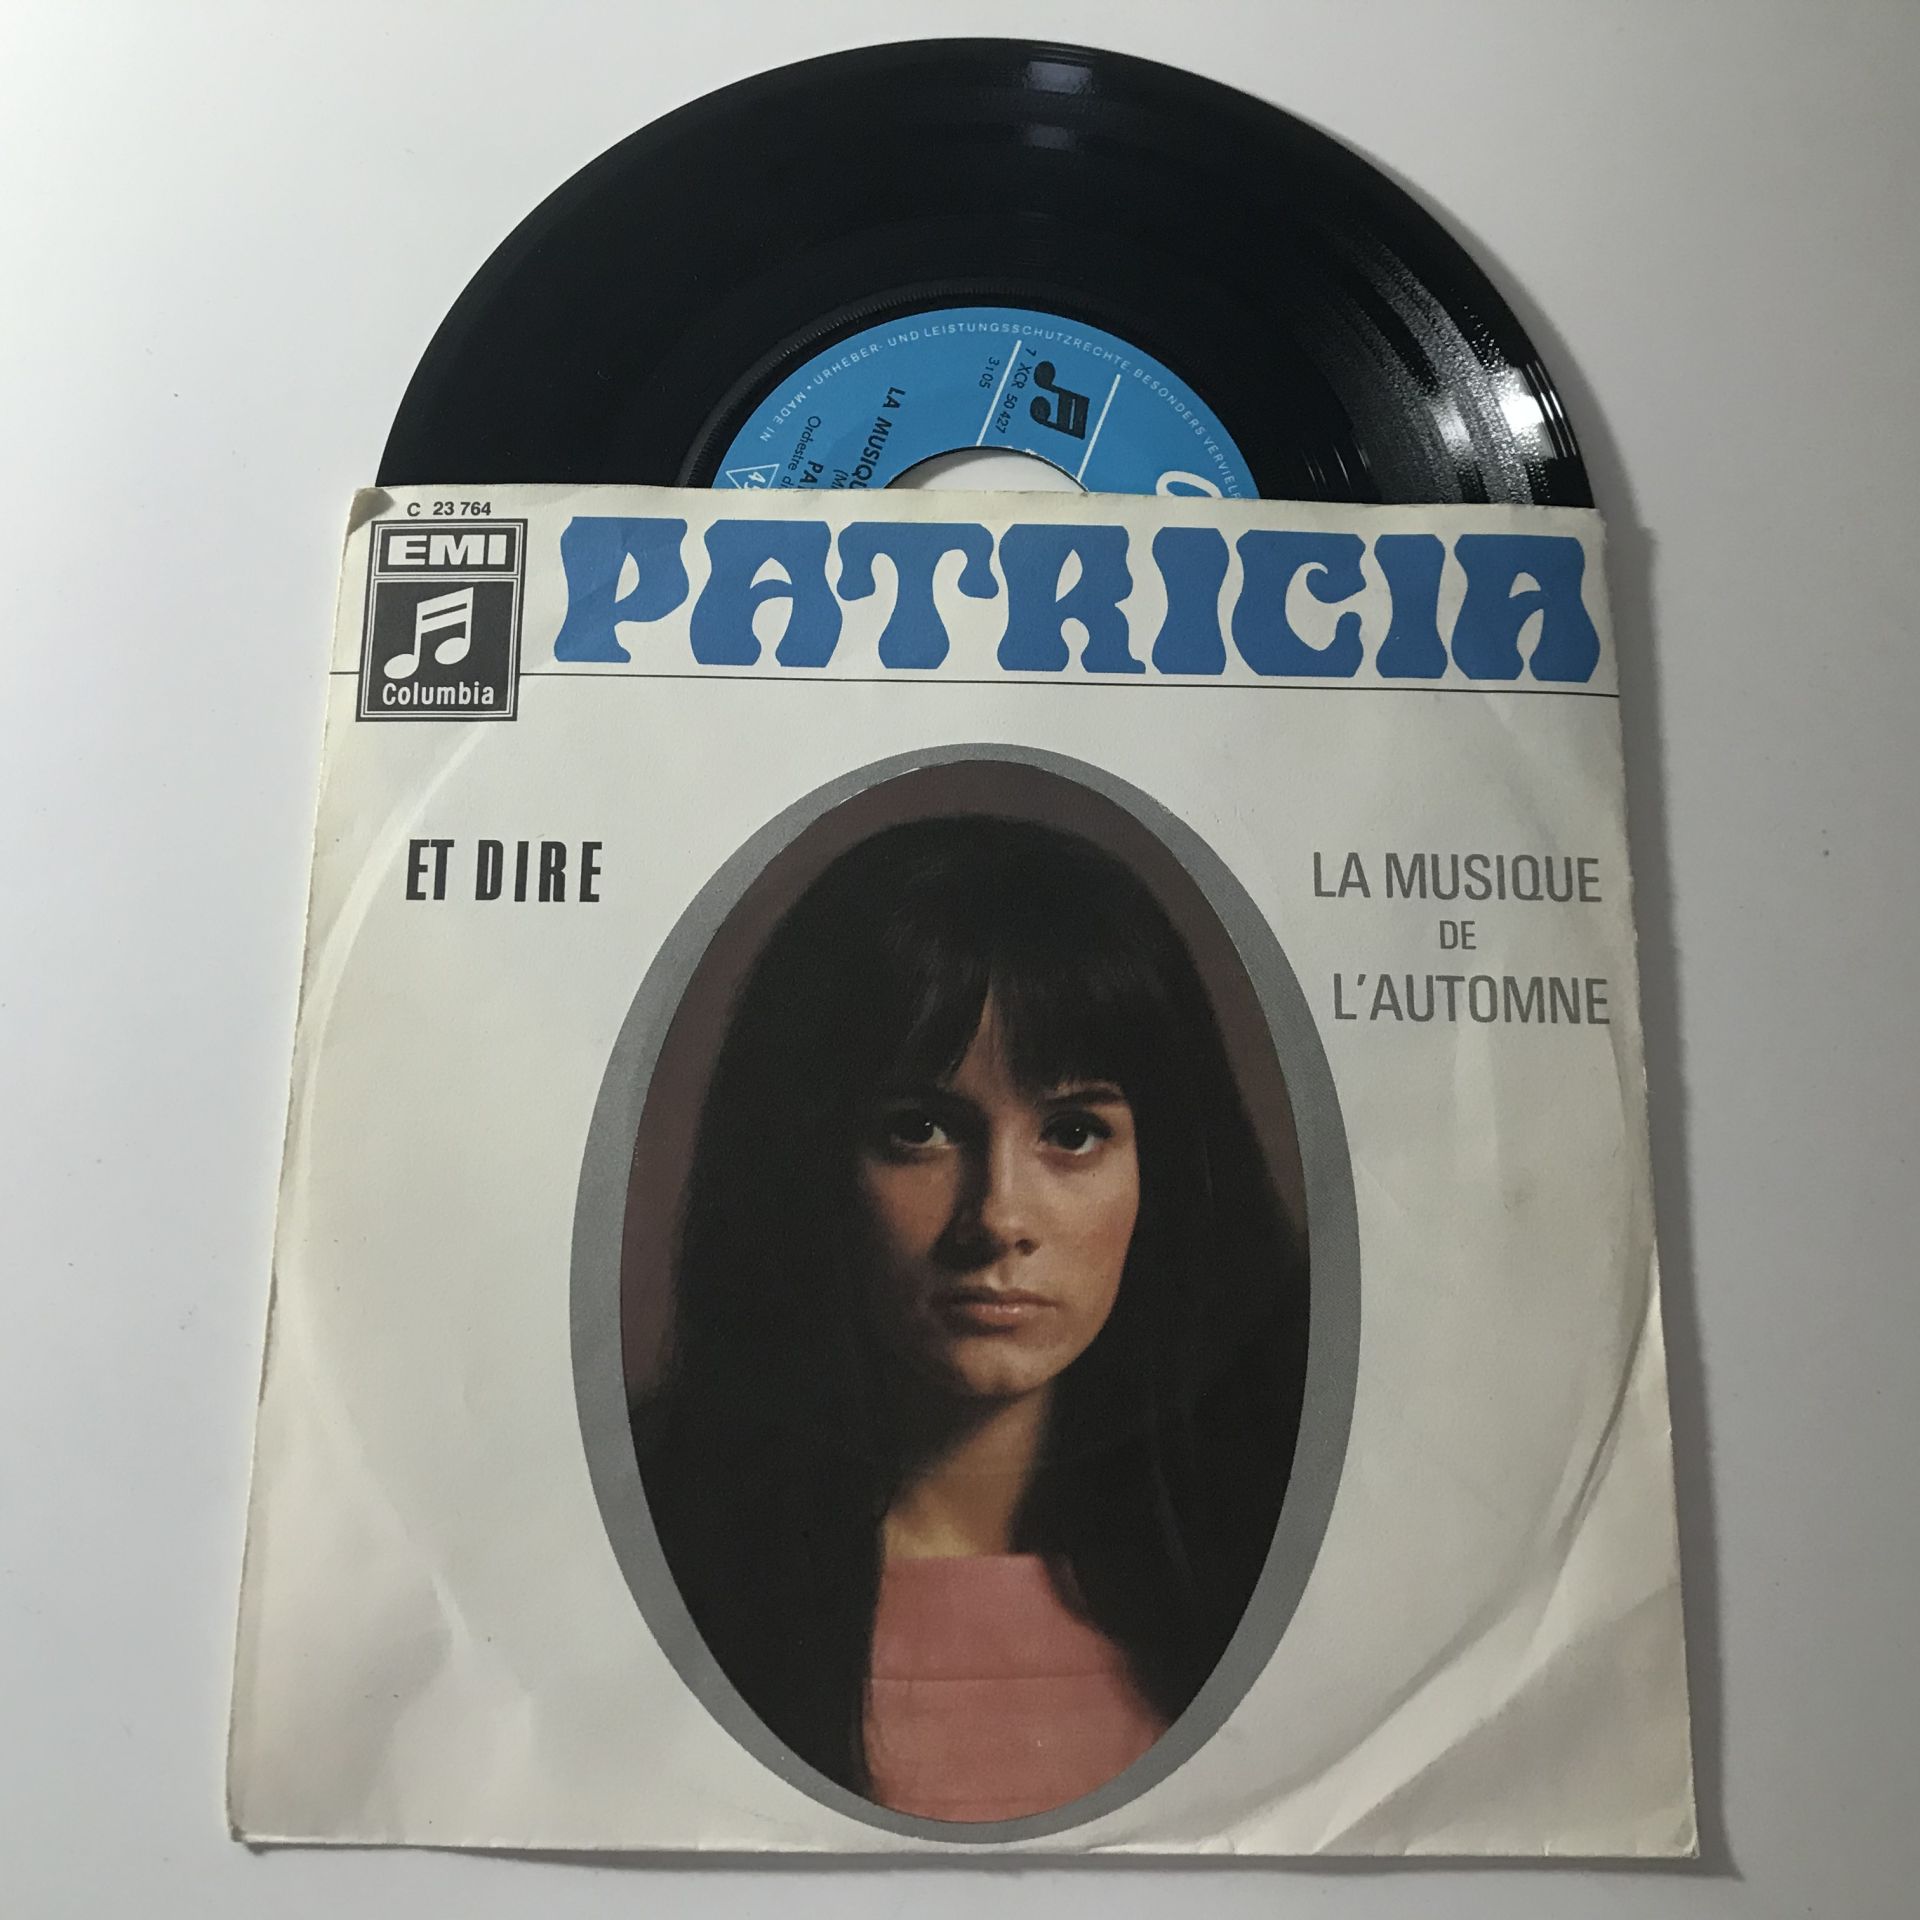 Patricia – Et Dire / La Musique De L'Autonome